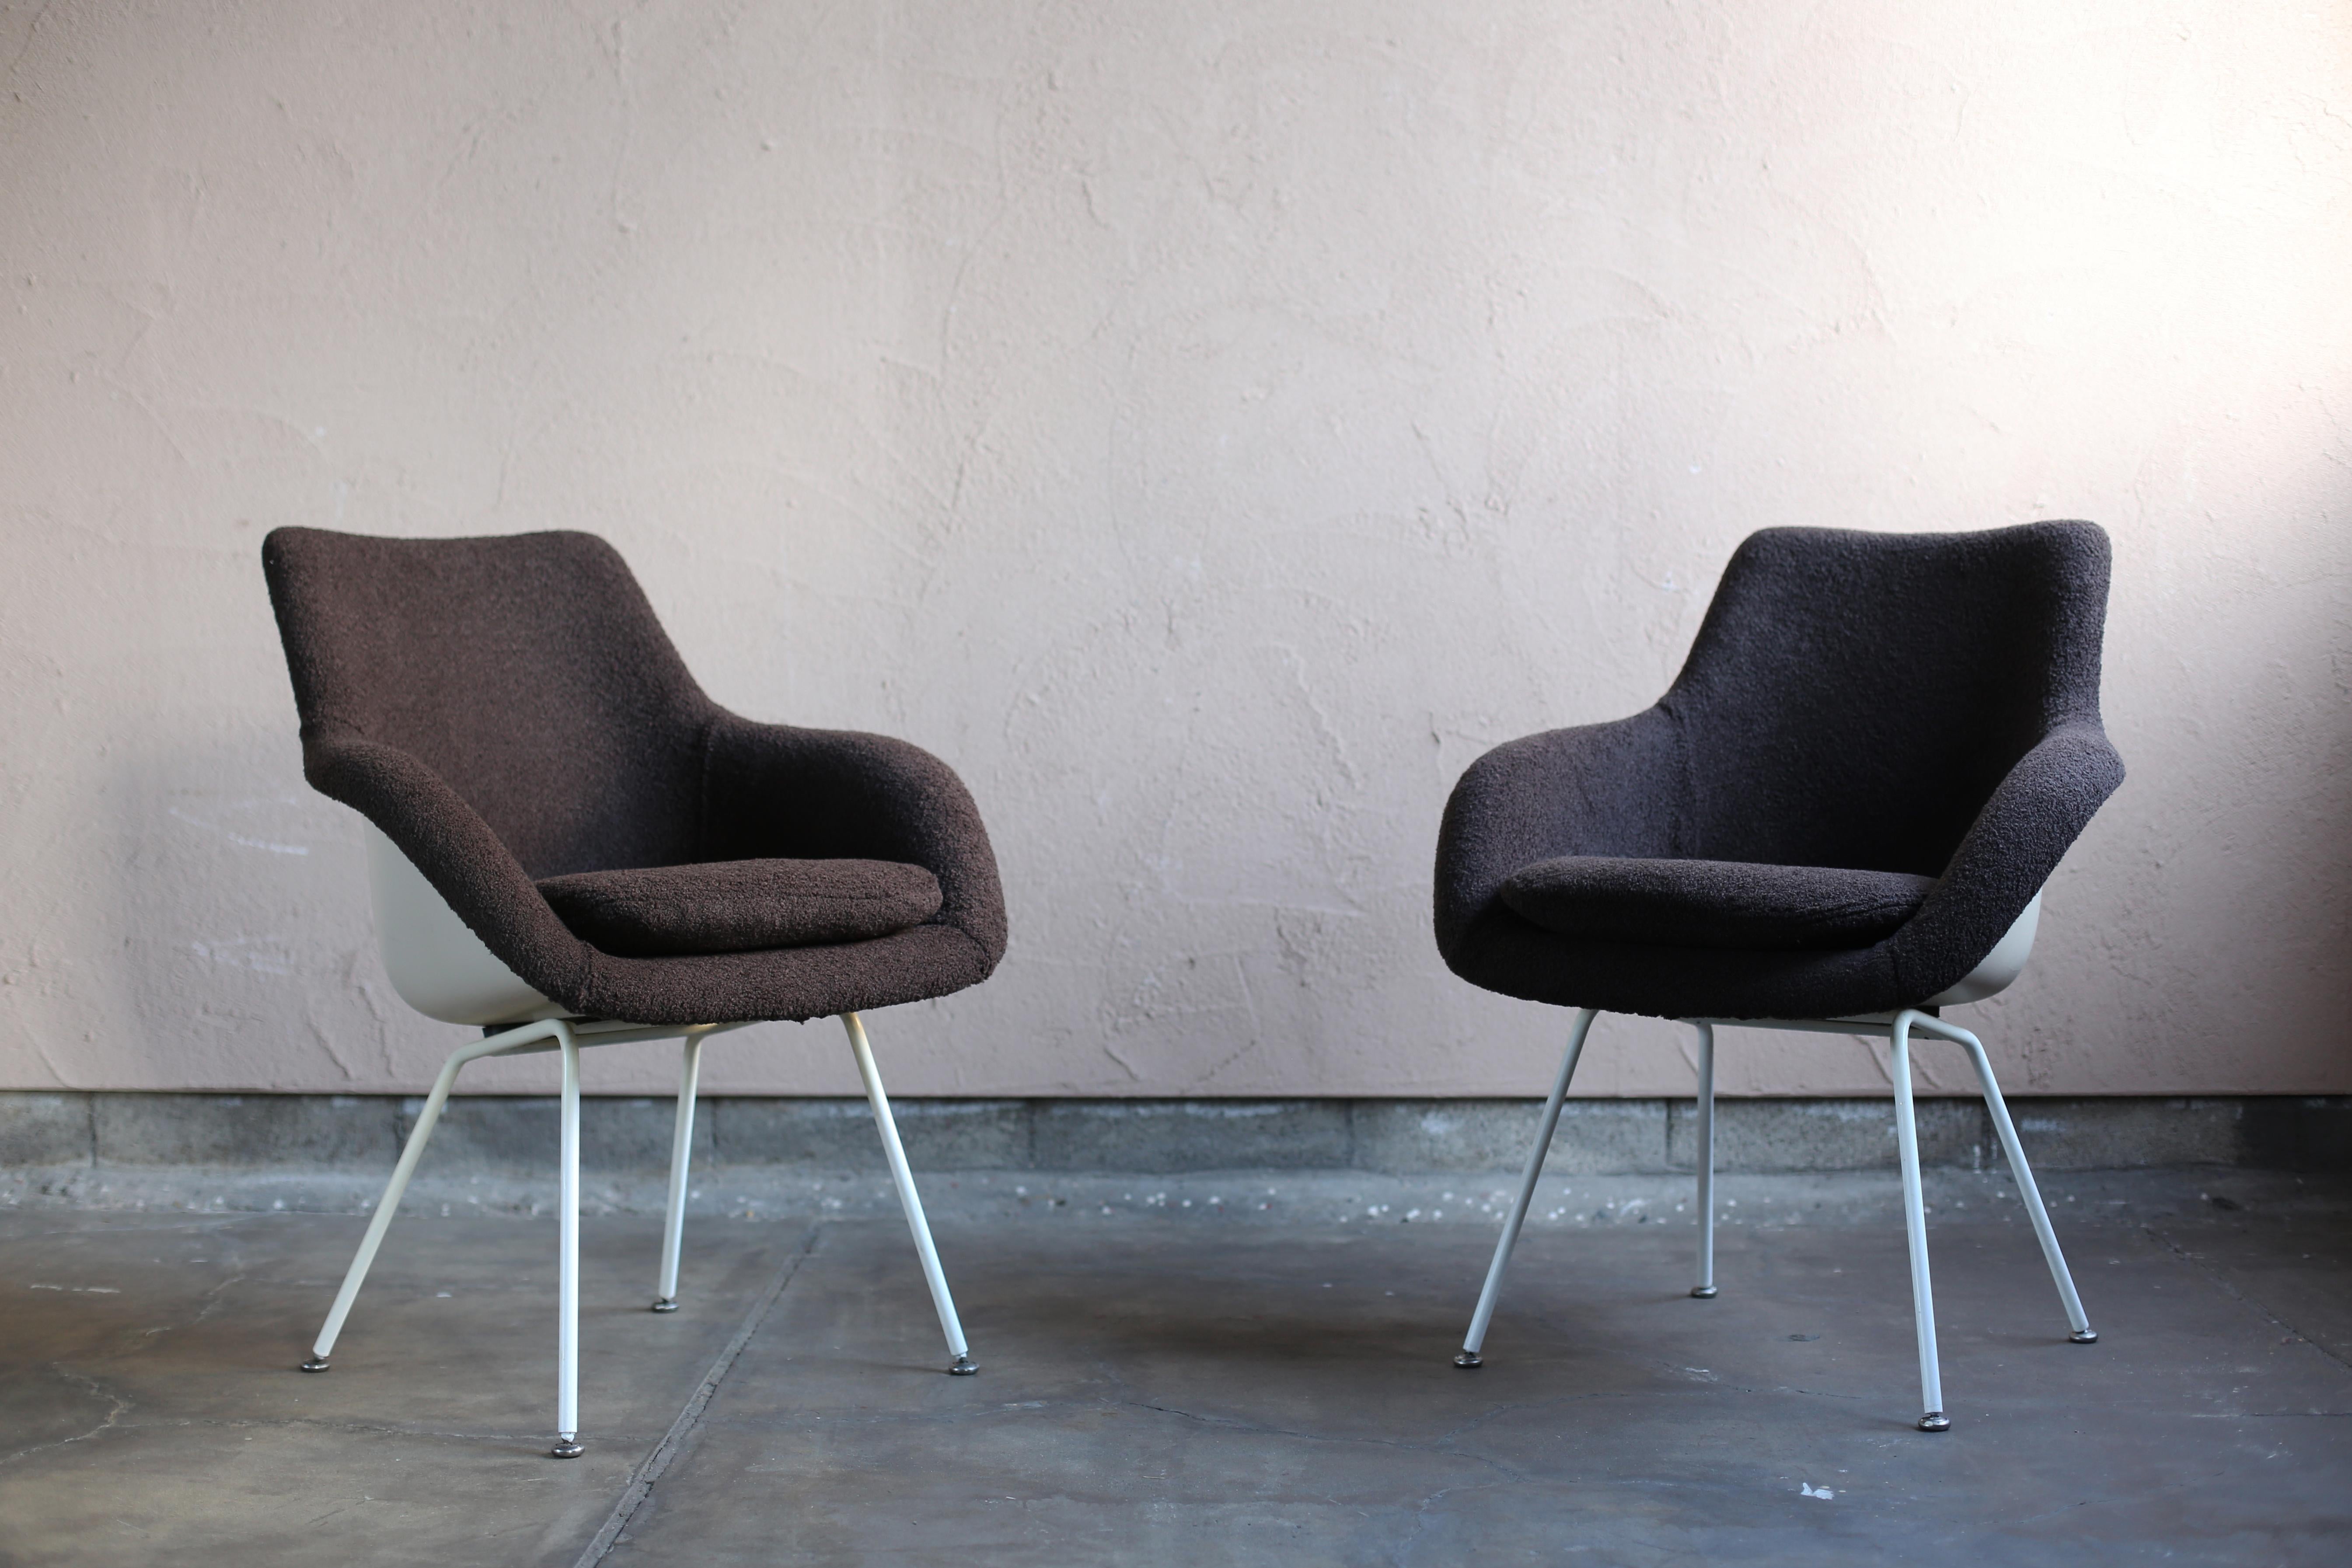 Die FVK-Fertigungstechnologie wurde 1954 von Amerika nach Japan eingeführt, wie die Charles & Ray Eames-Stühle aus den 1950er Jahren zeigen.
Isamu Kenmochi, Sori Yanagi, Kenzo Tange und andere Designer und Architekten dieser Zeit schufen zusammen